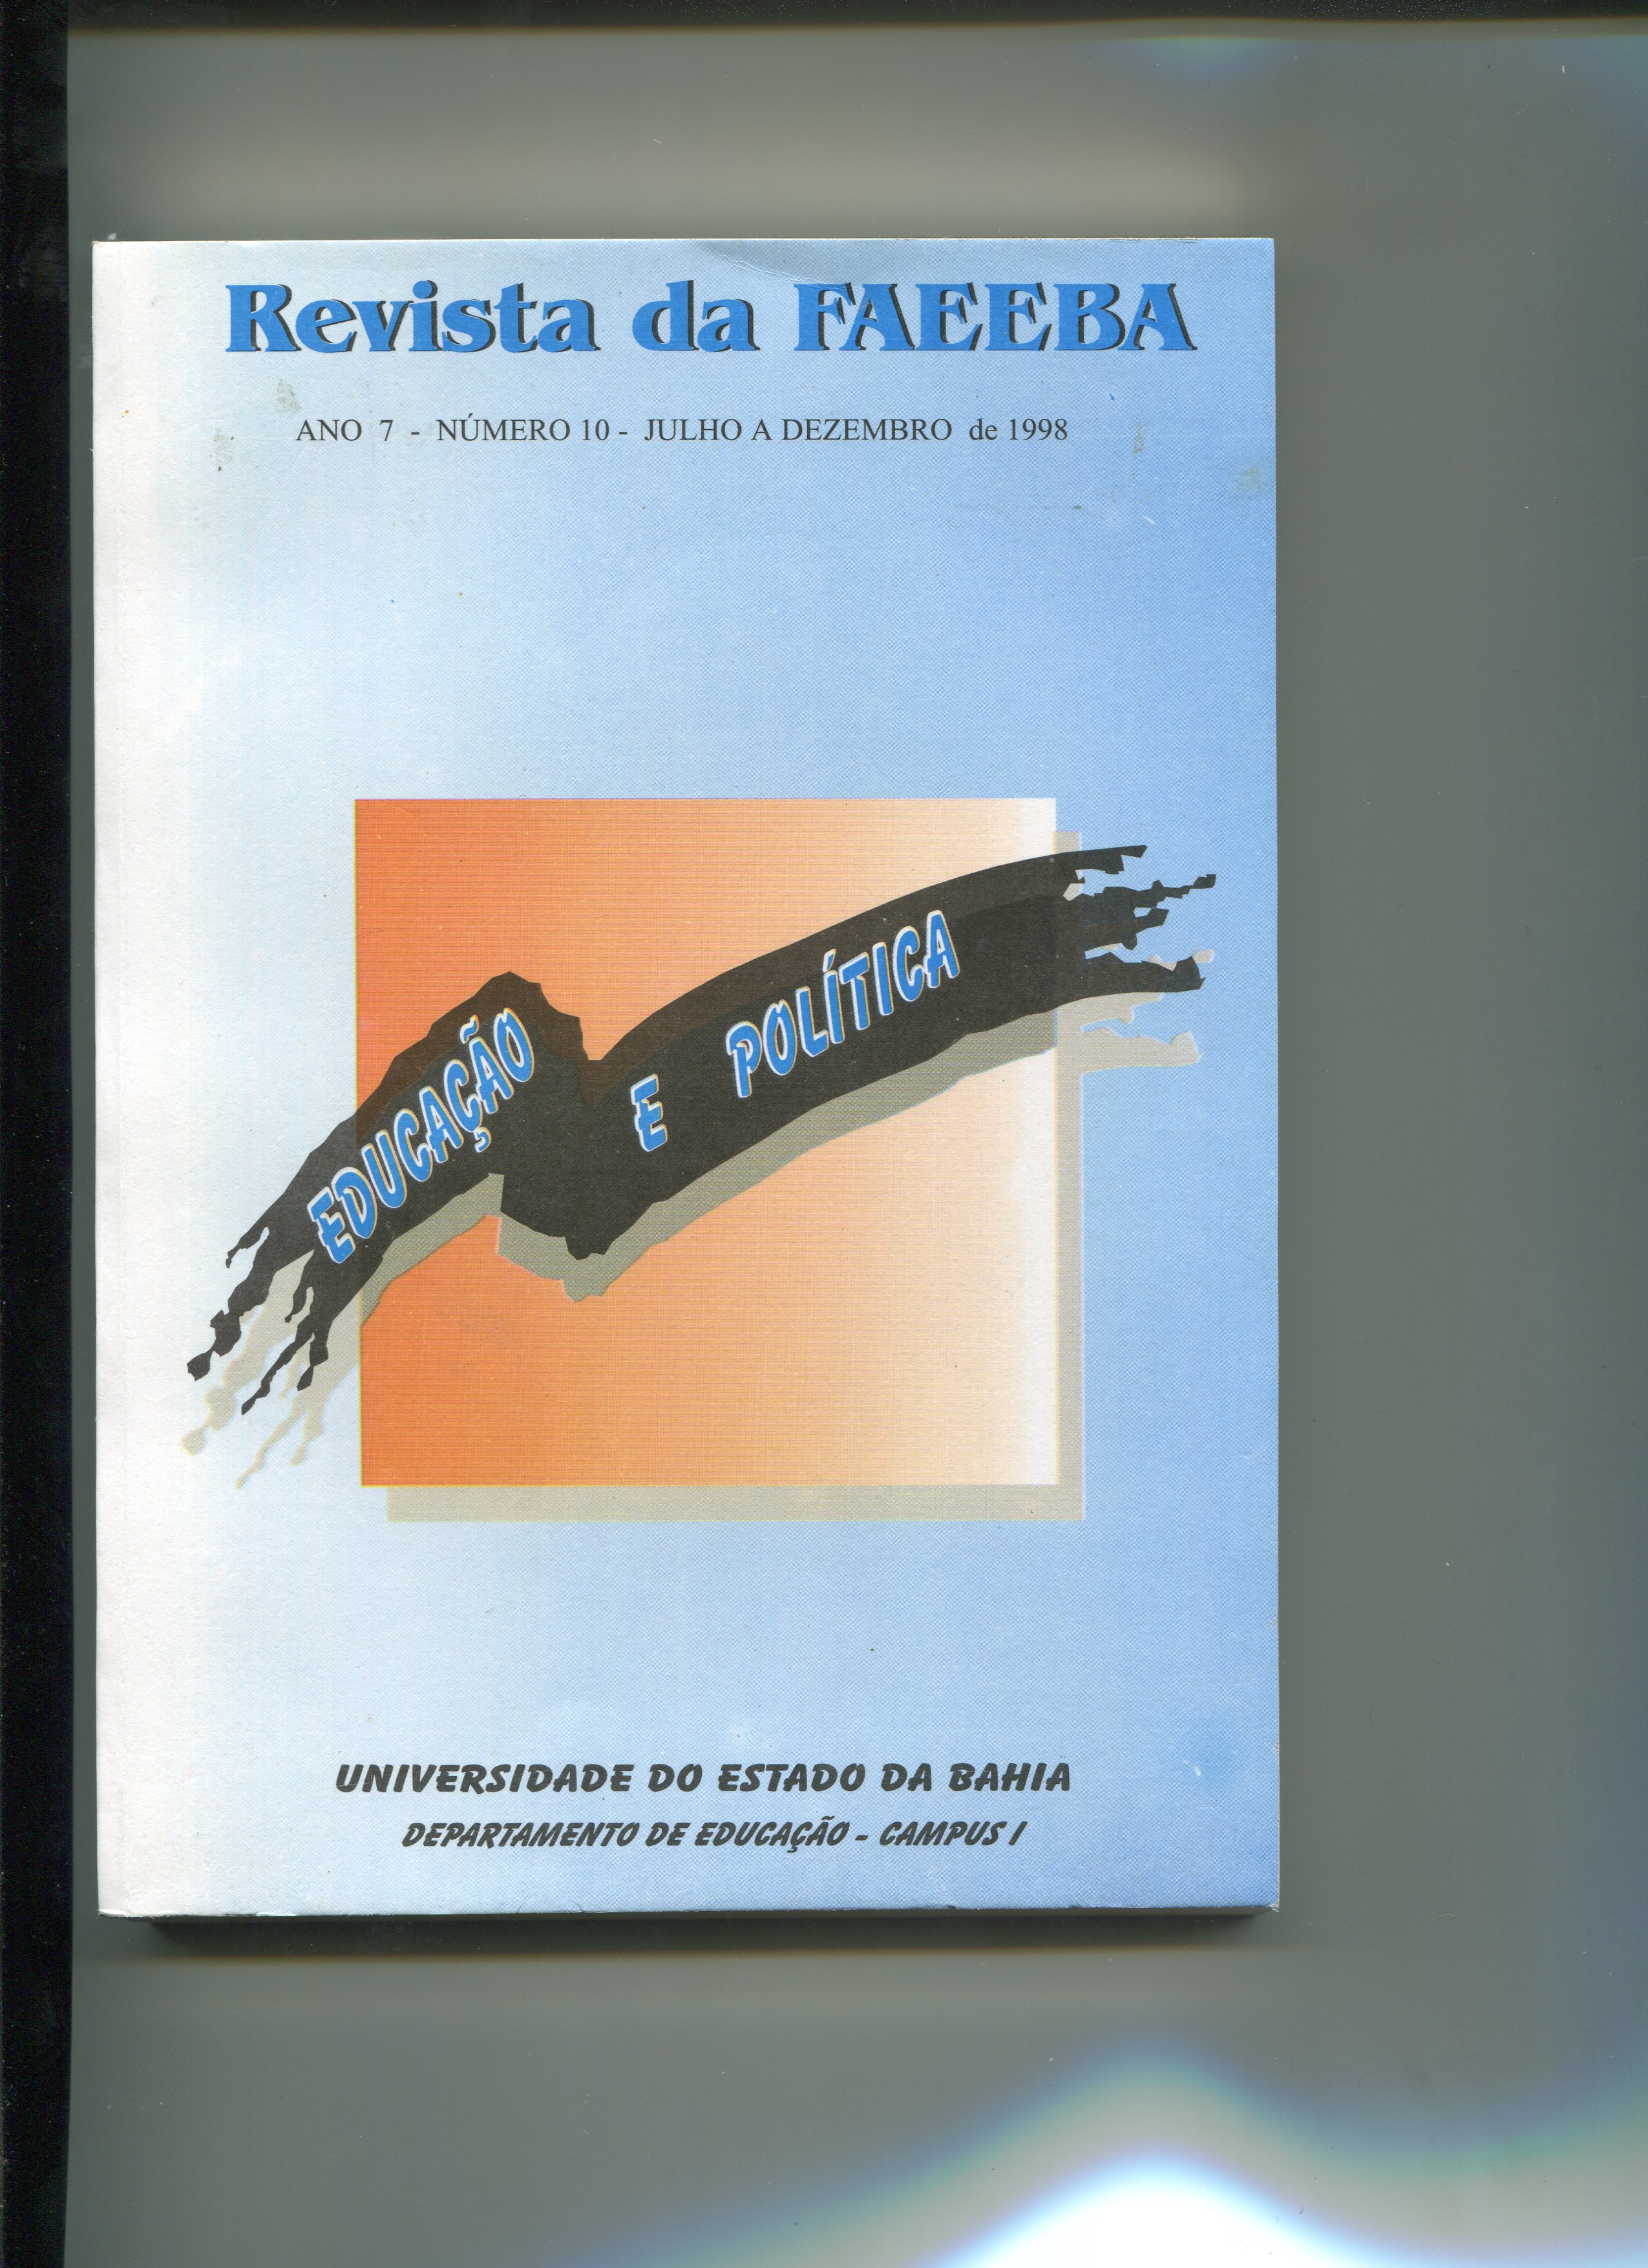 					Afficher Vol. 7 No. 10 (1998): Revista da FAEEBA
				